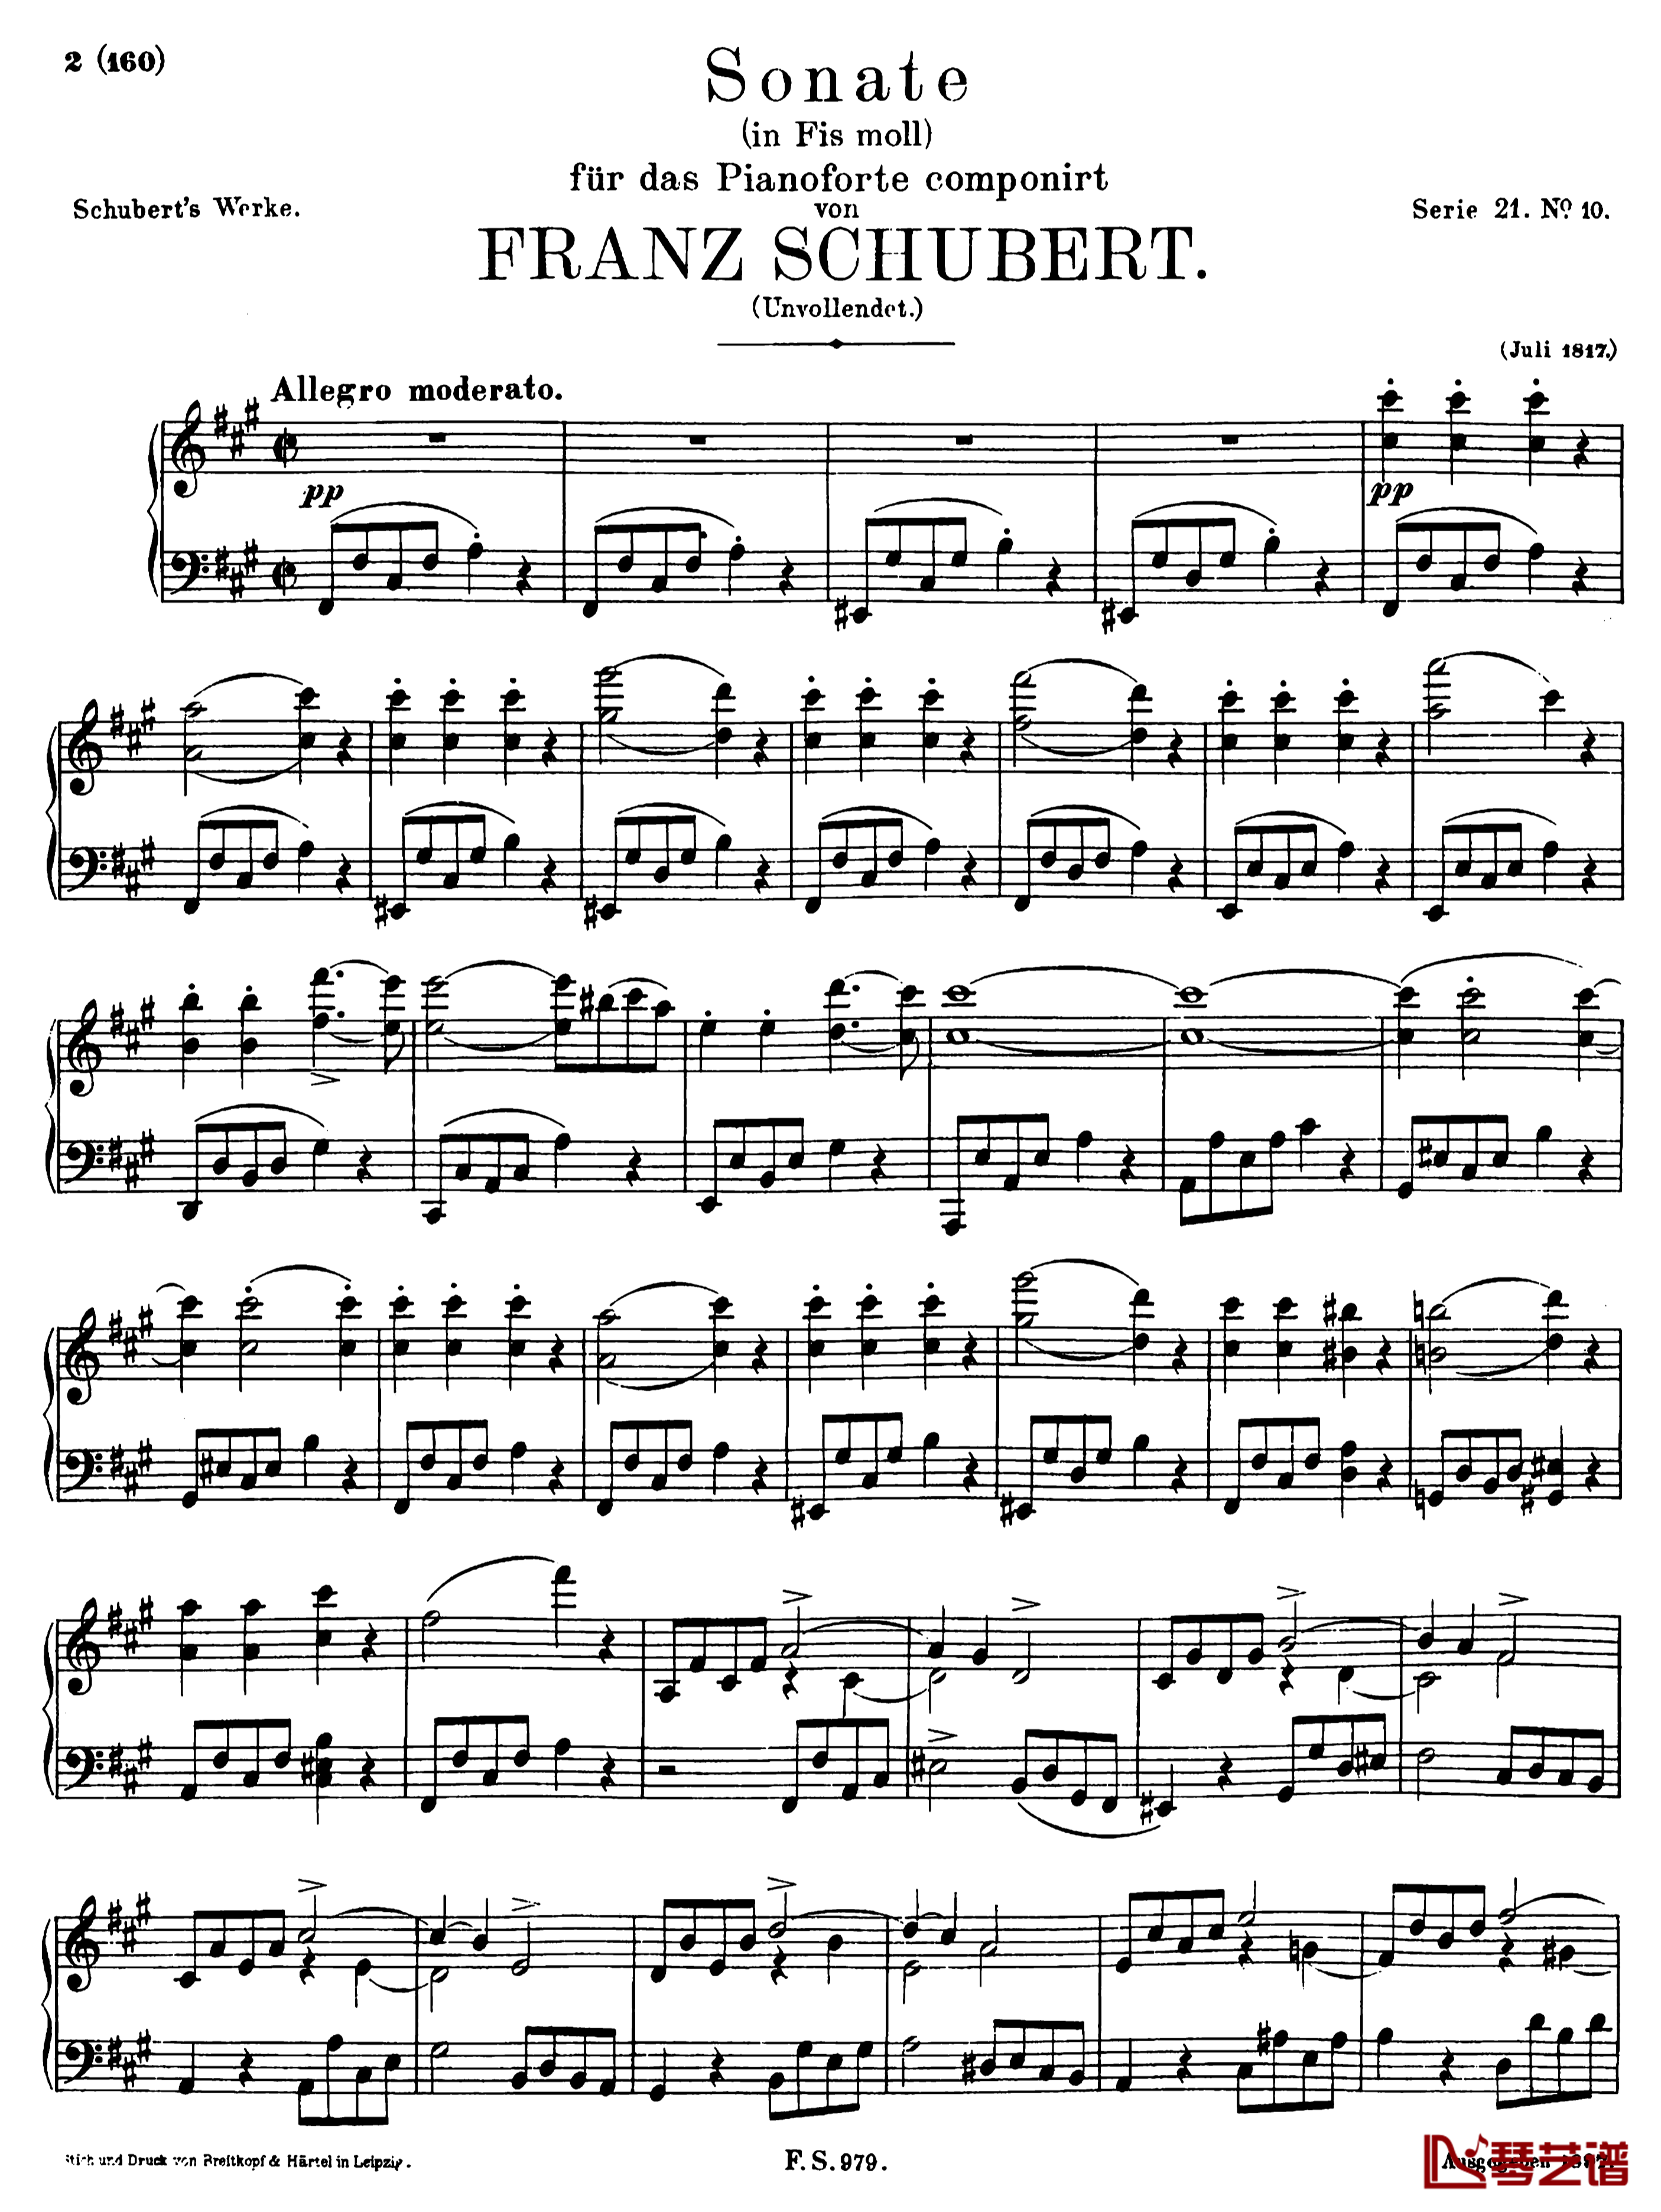 升f小调钢琴奏鸣曲D.571钢琴谱-李斯特-舒伯特1